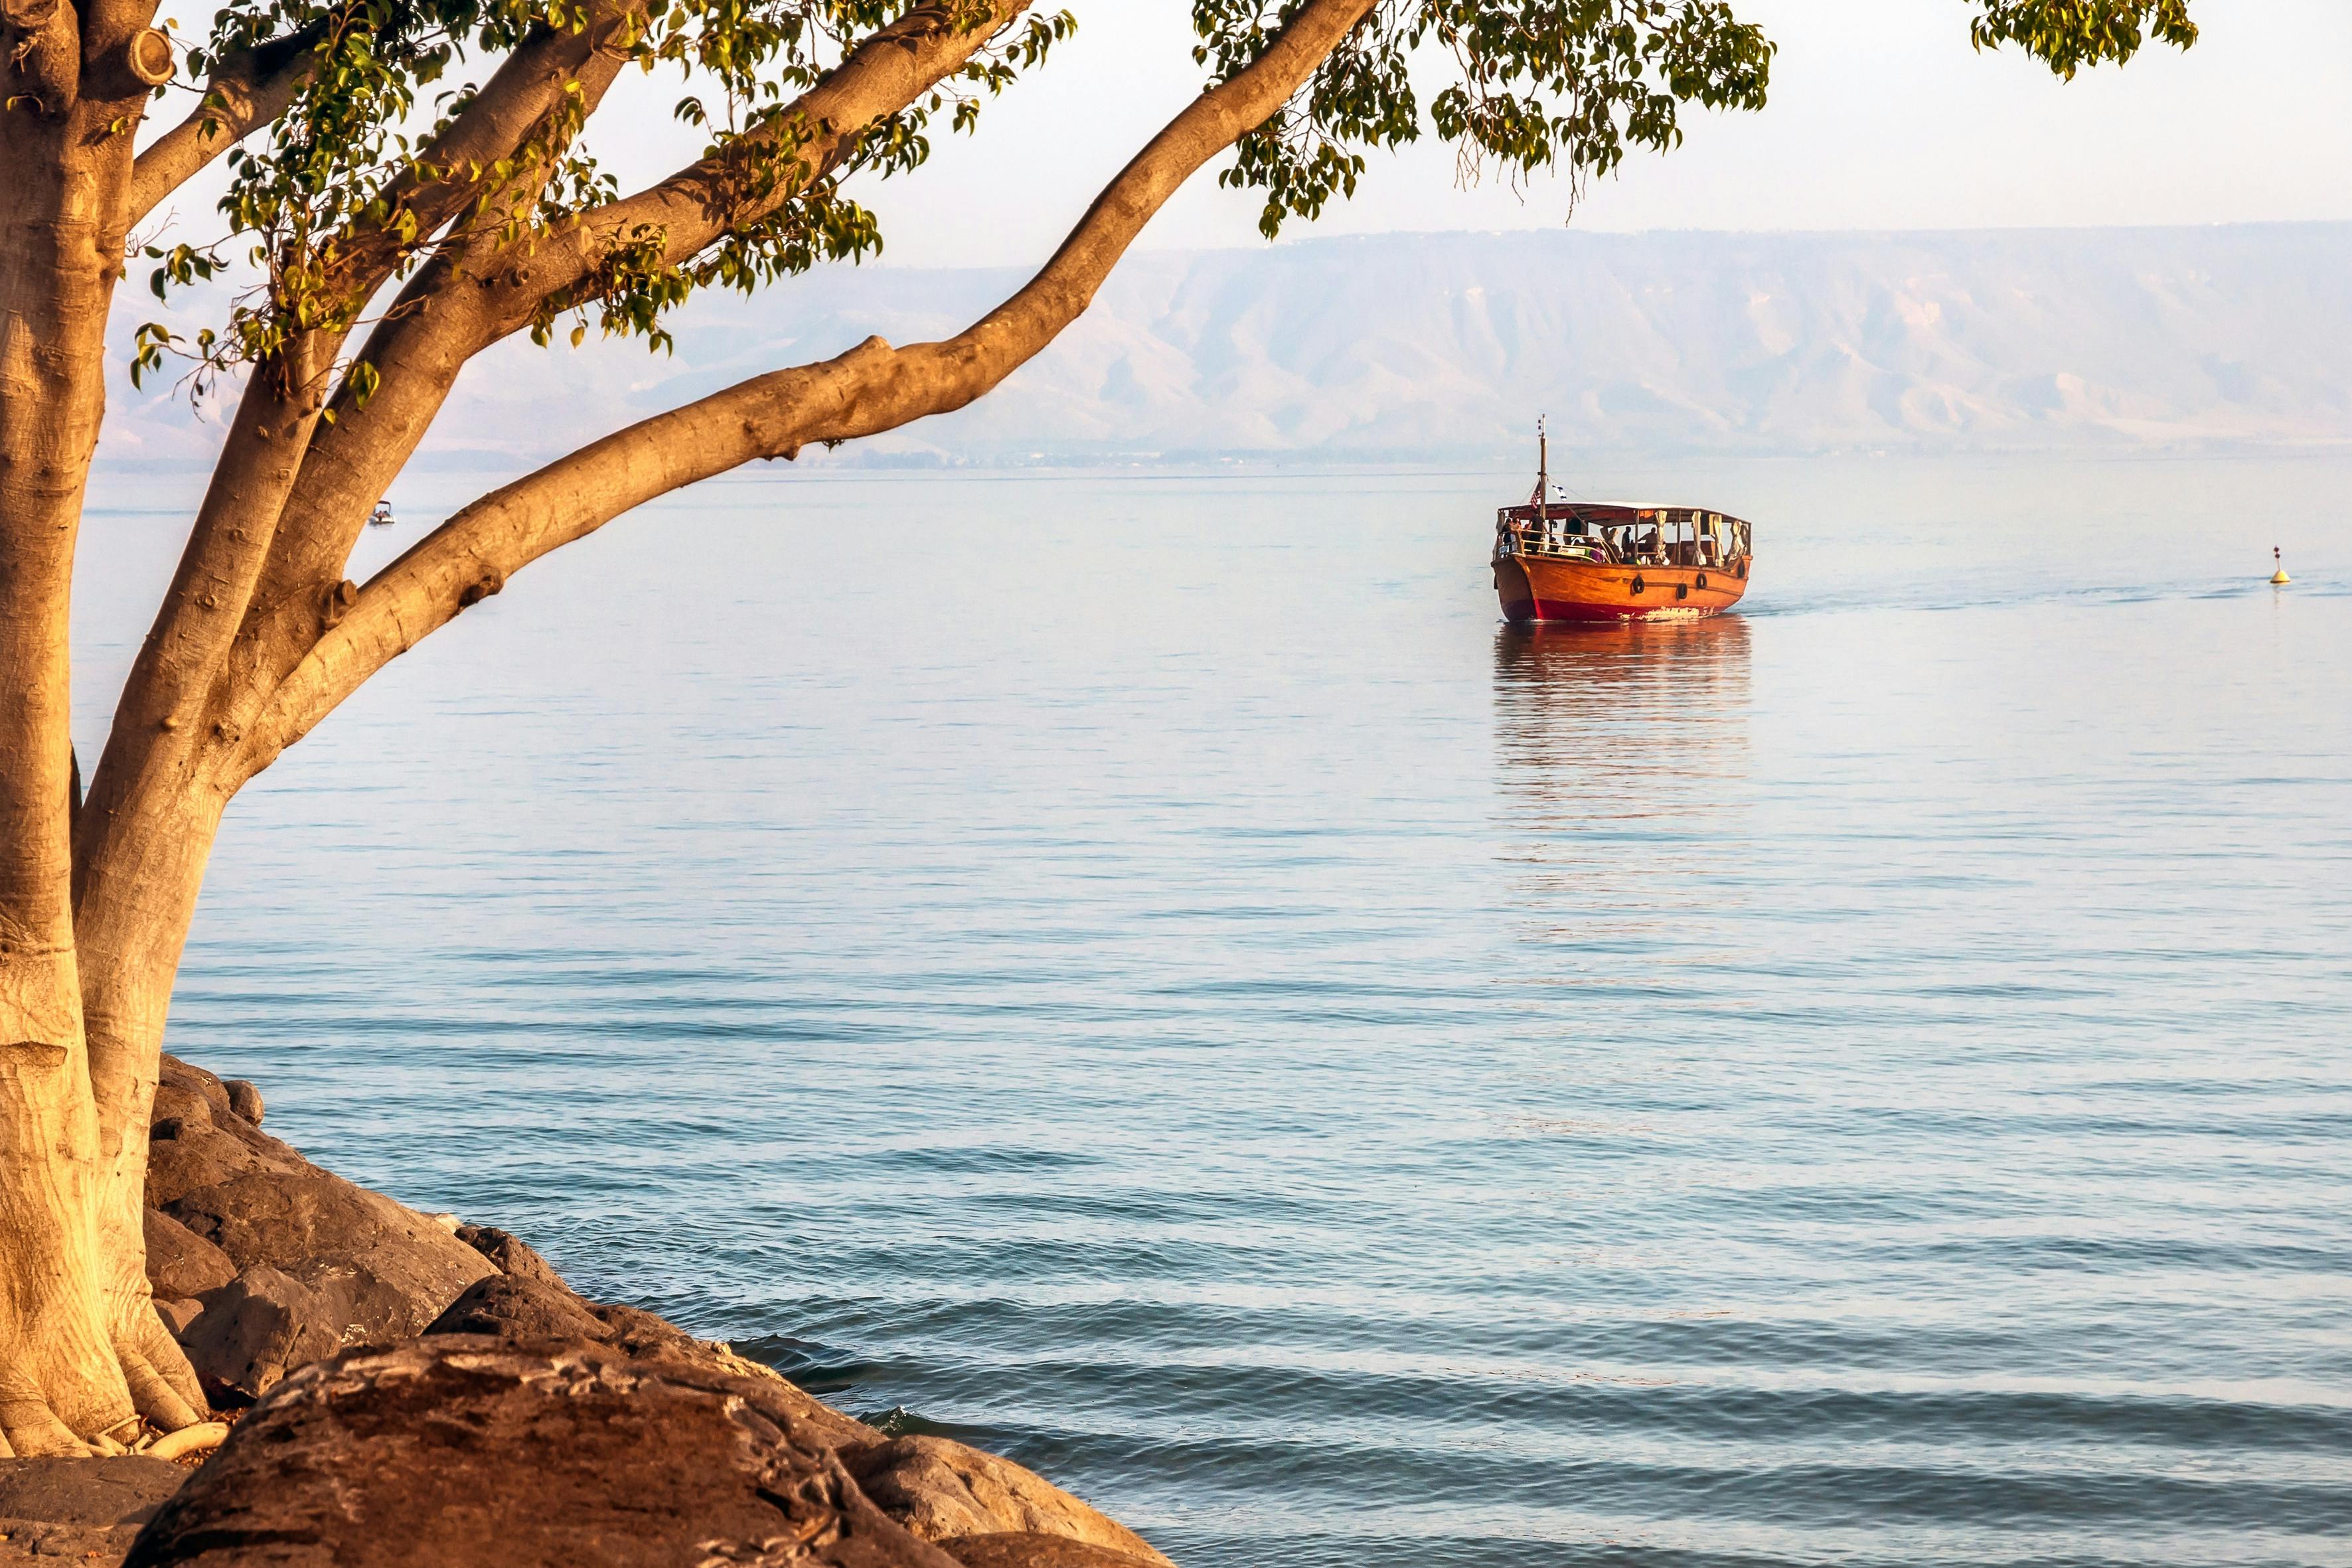 Sea of Galilee 1.jpg